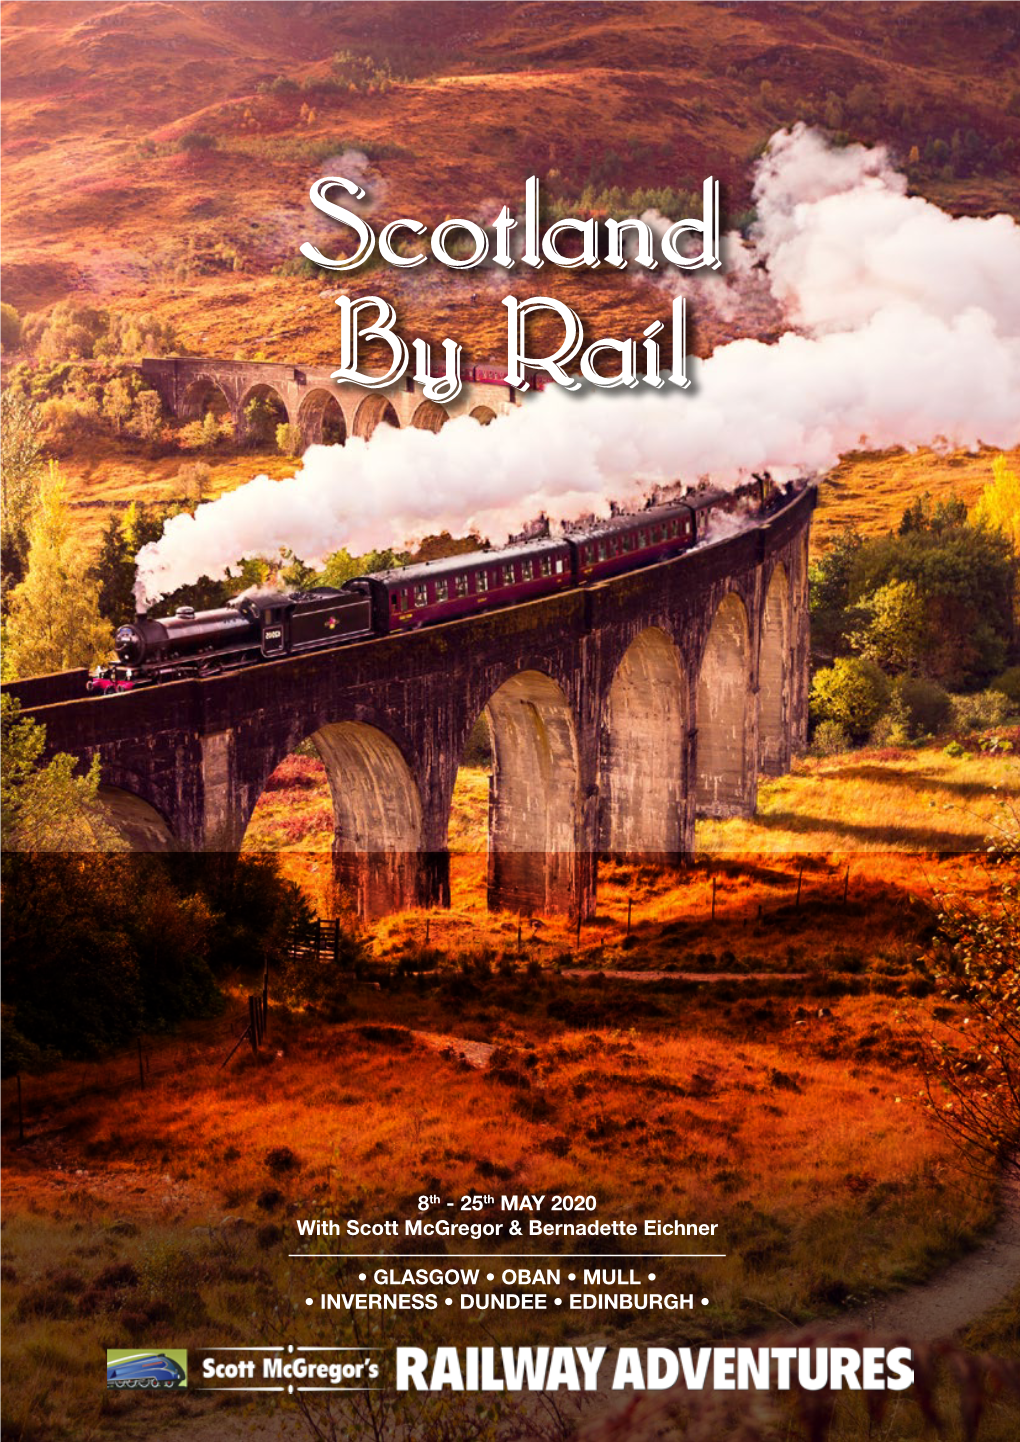 Scotland by Rail